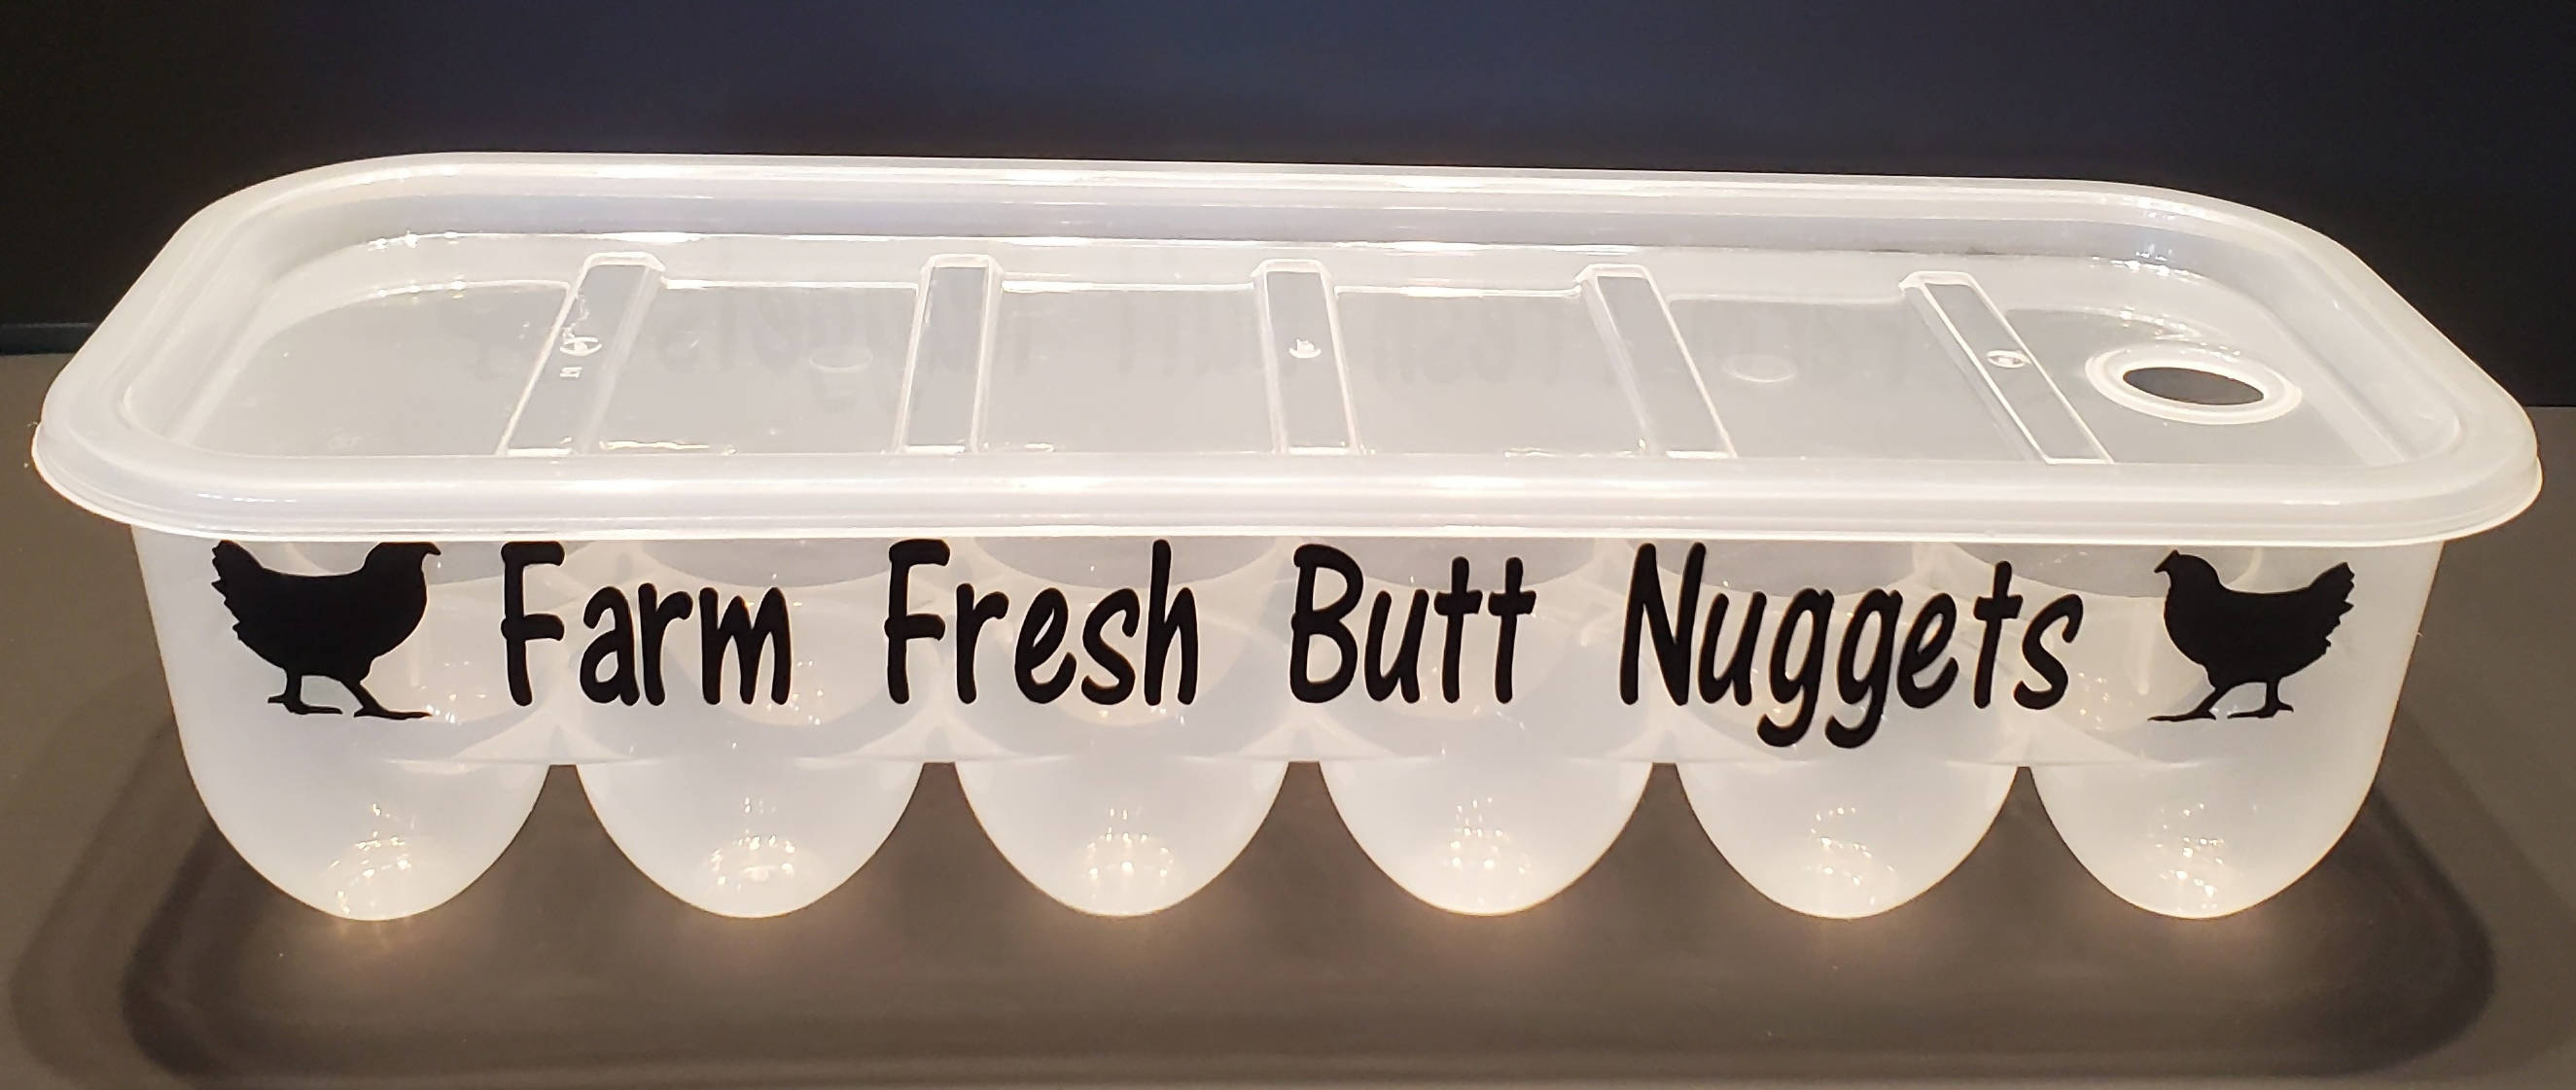 Farm Fresh Butt Nuggets... Egg Carton